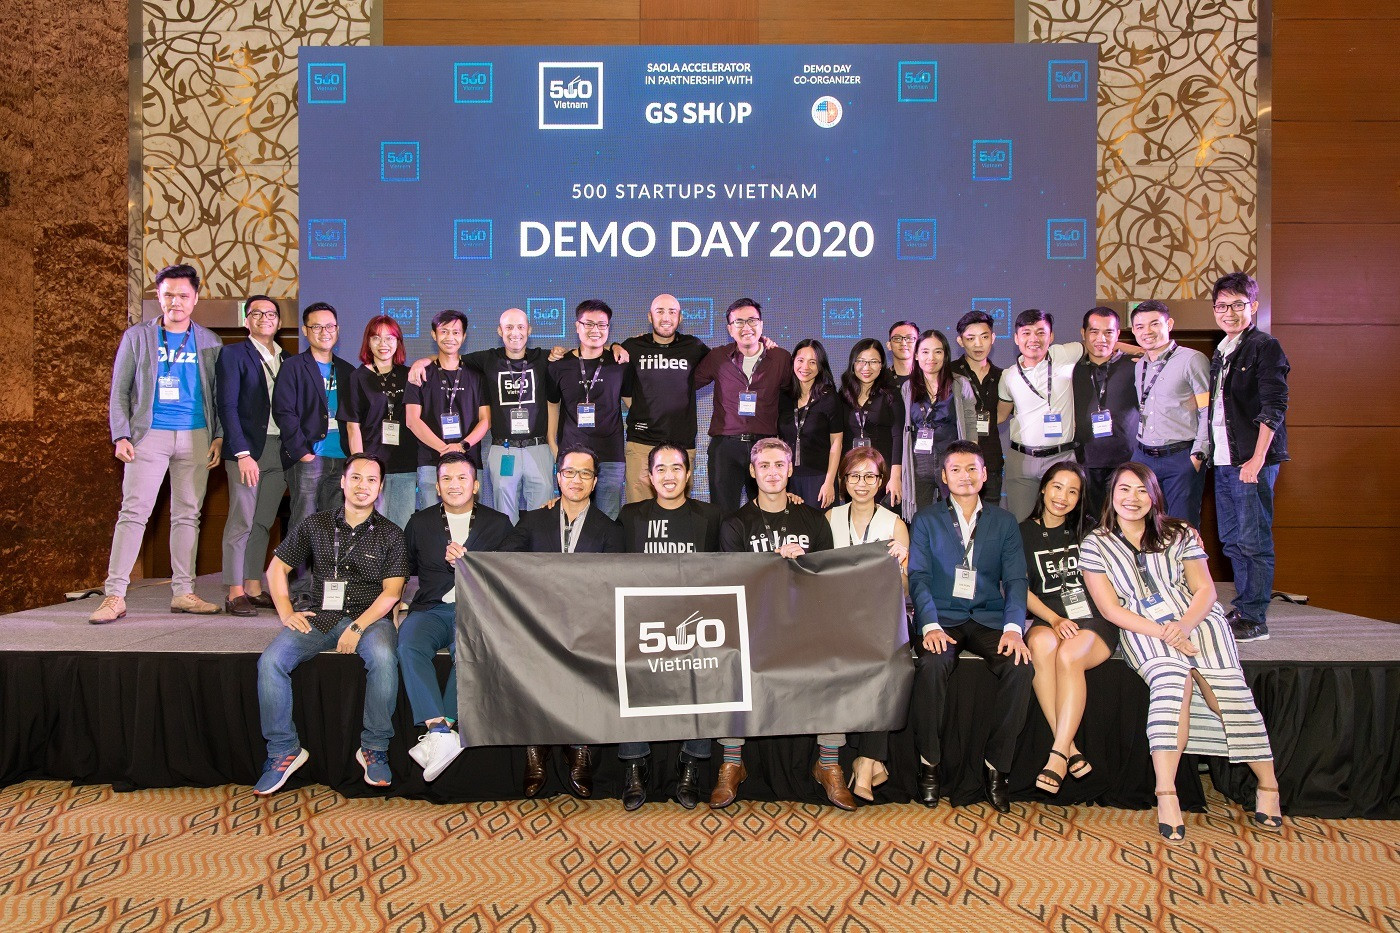 Quỹ 500 Startups đầu tư tới 150 nghìn USD cho 9 công ty khởi nghiệp Việt Nam - Ảnh 1.